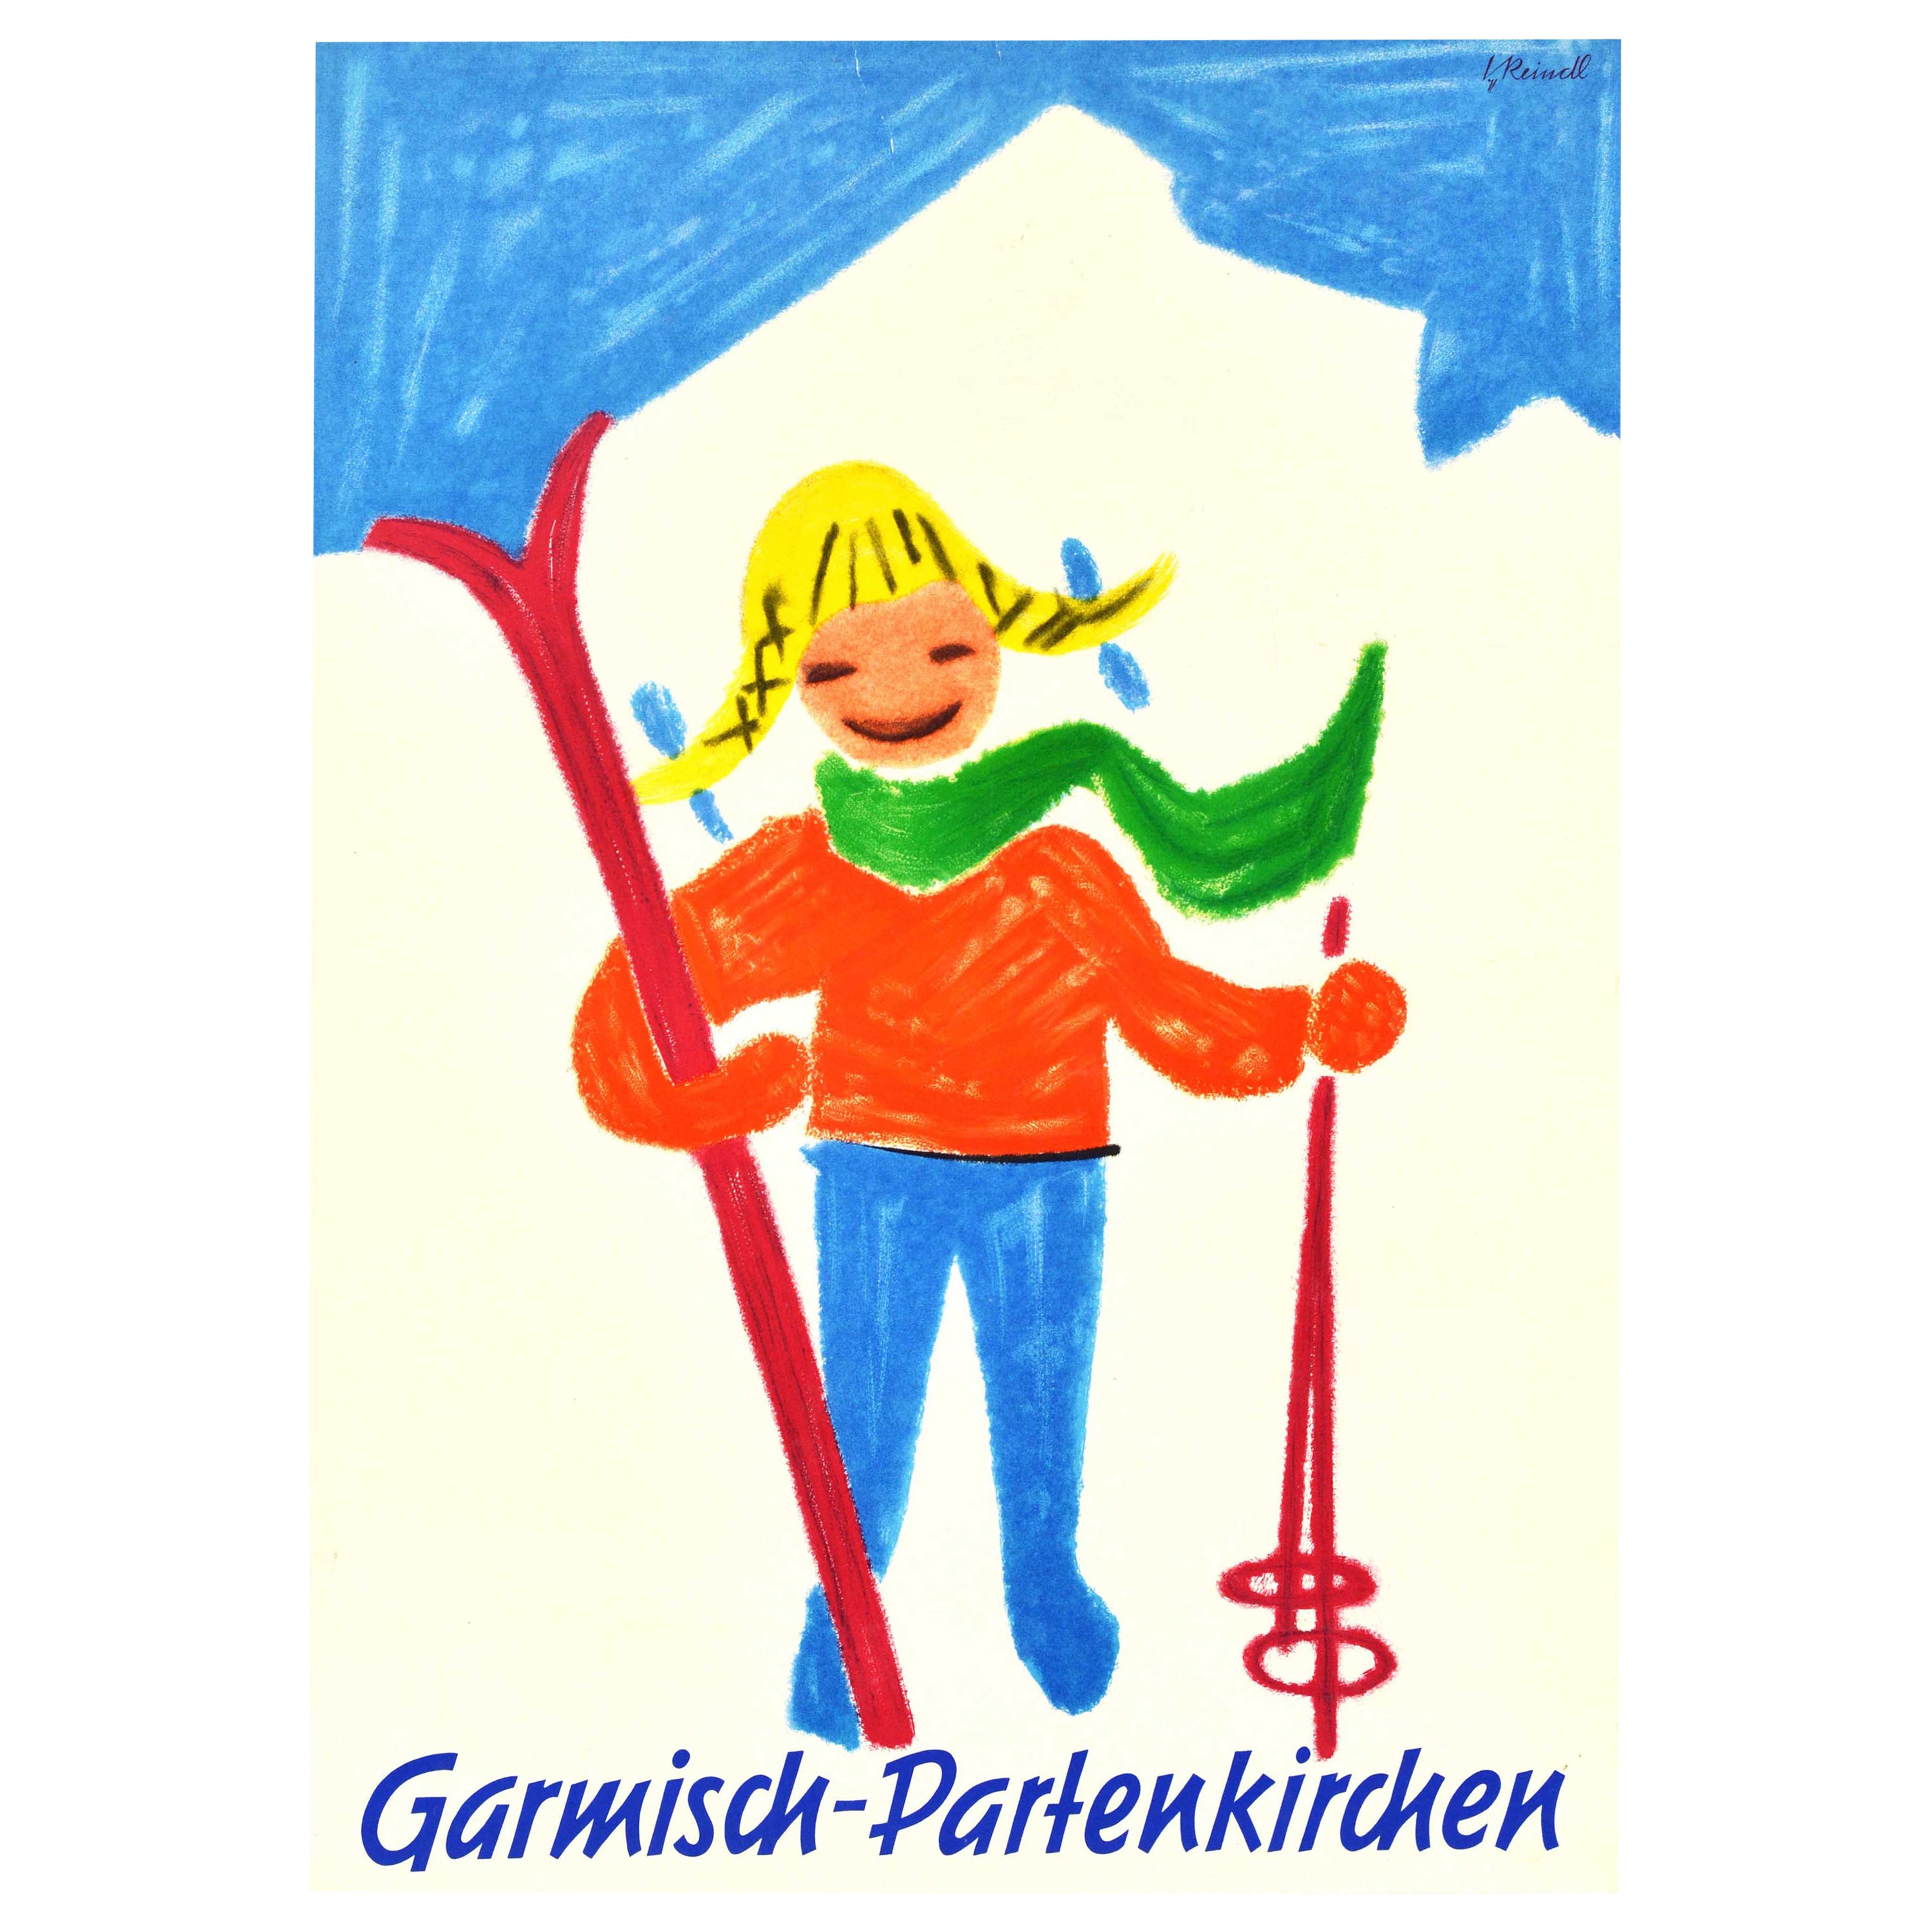 Original Vintage Winter Sport Ski Poster Garmisch Partenkirchen Bavaria Germany